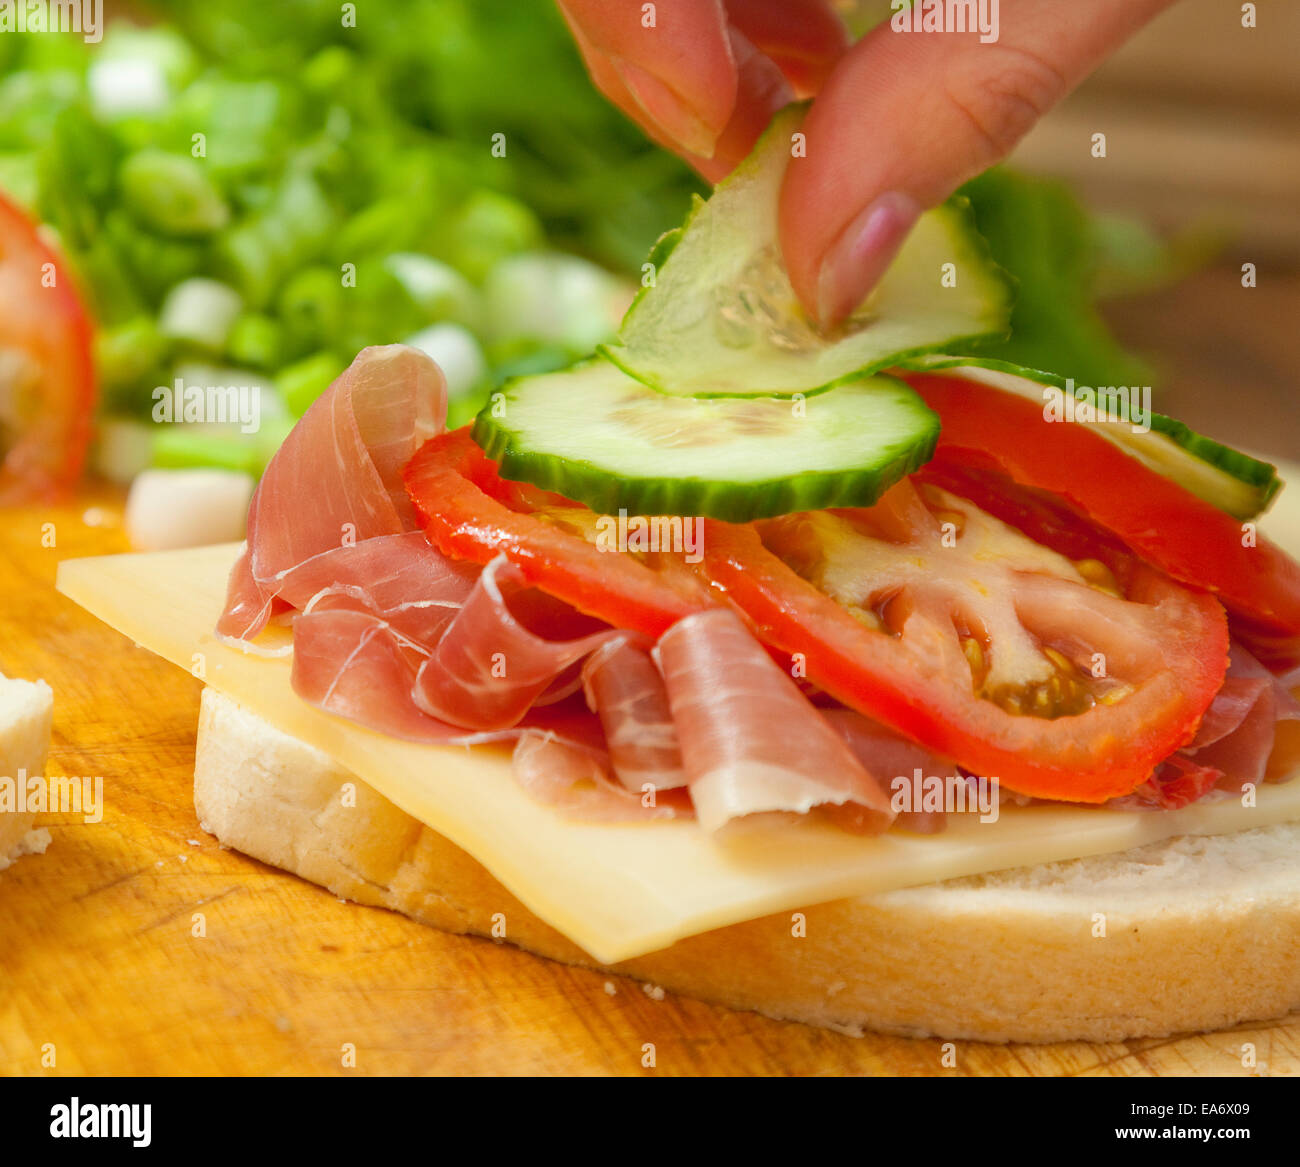 Woman's hand mise sur concombre pain Bloomer blanc sandwich de jambon prosciutto, fromage de gruyère et de tranches de tomate Banque D'Images